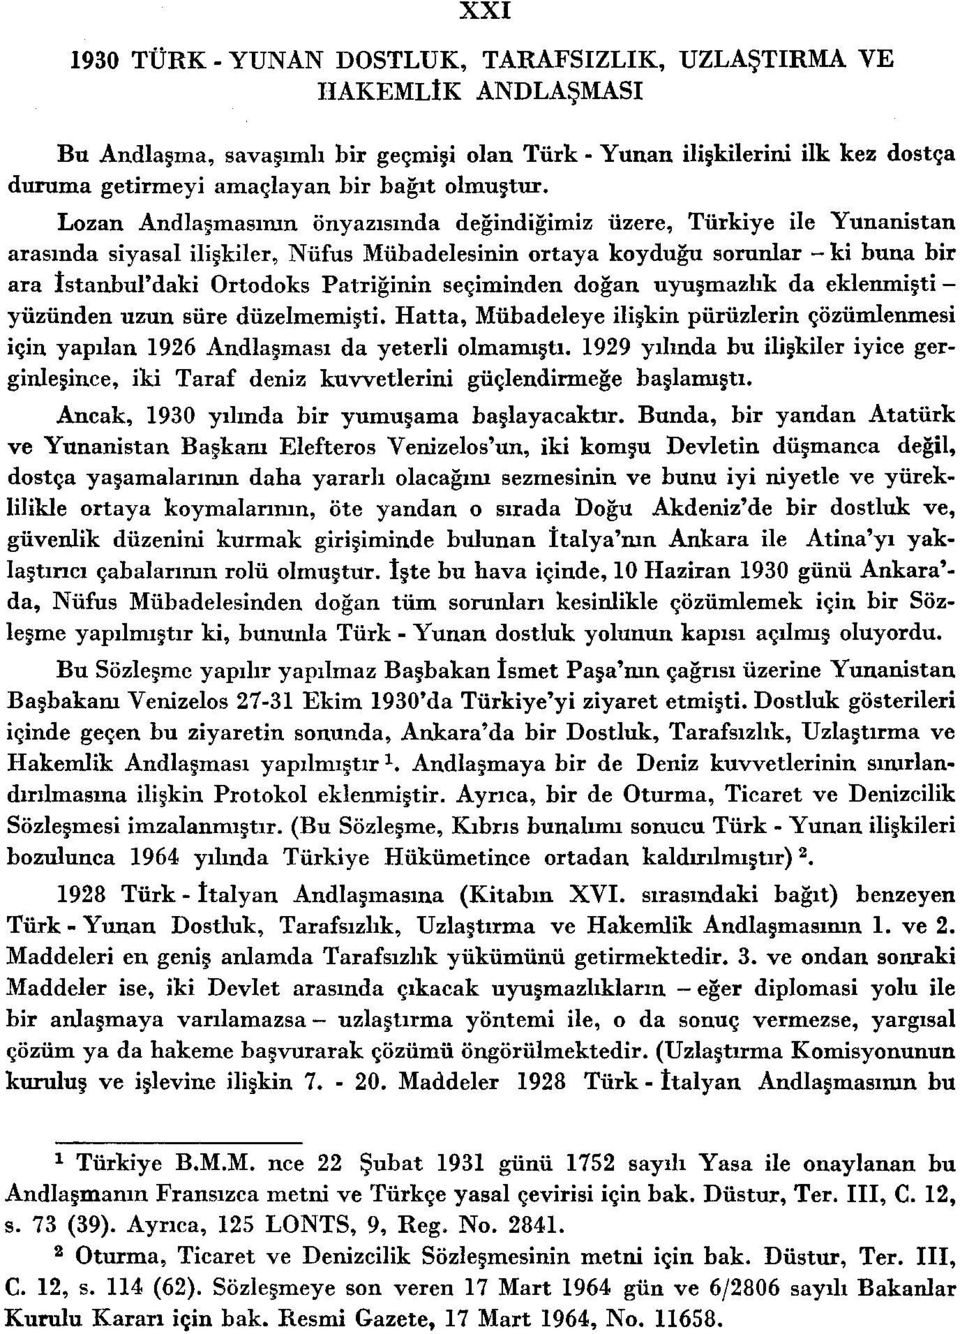 Lozan Andlaşmasının önyazısında değindiğimiz üzere, Türkiye ile Yunanistan arasında siyasal ilişkiler, Nüfus Mübadelesinin ortaya koyduğu sorunlar - ki buna bir ara İstanbul'daki Ortodoks Patriğinin